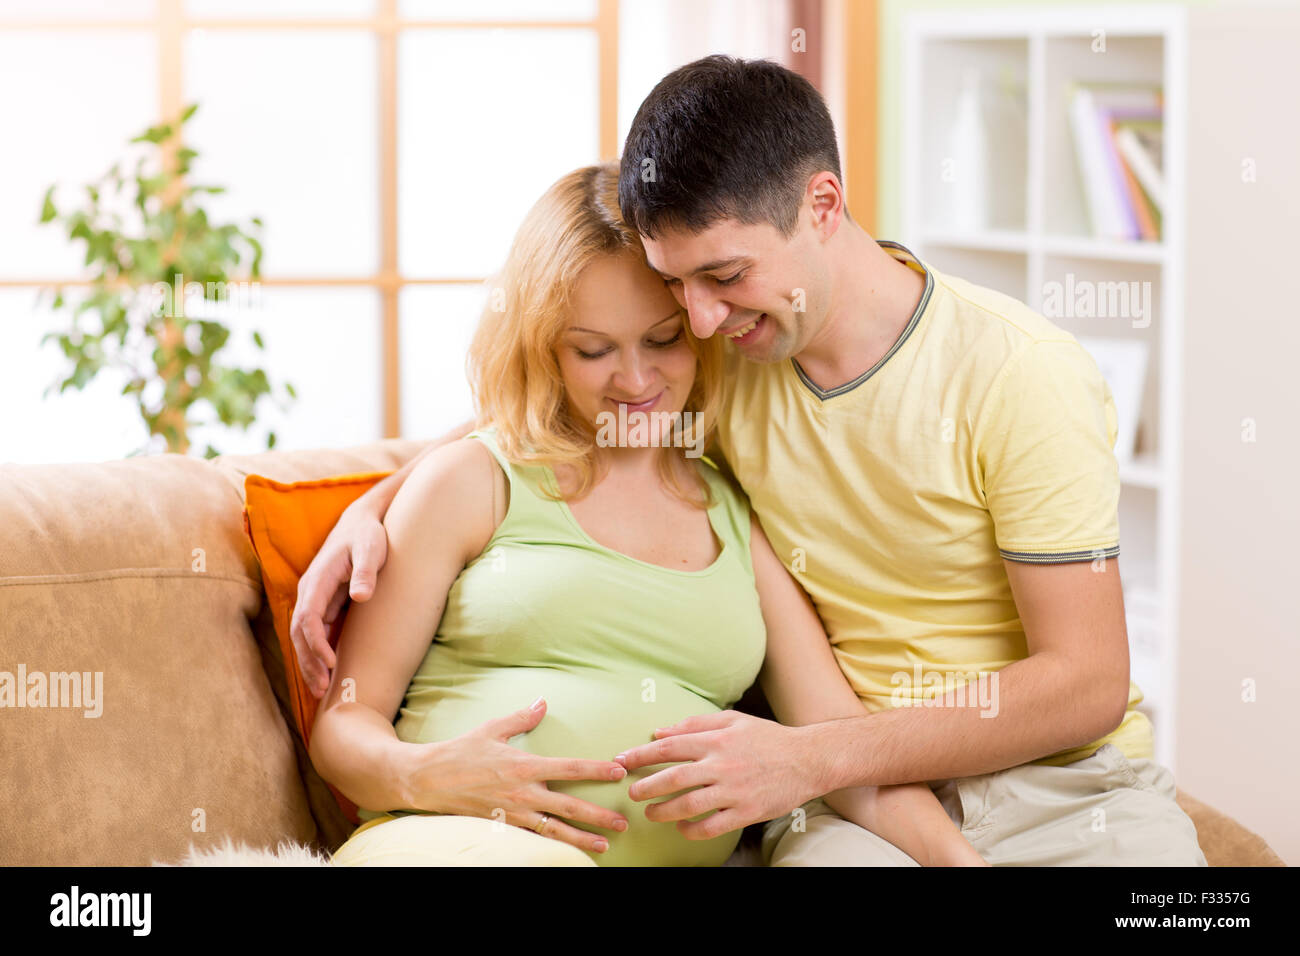 Portrait of happy couple pending baby Stock Photo